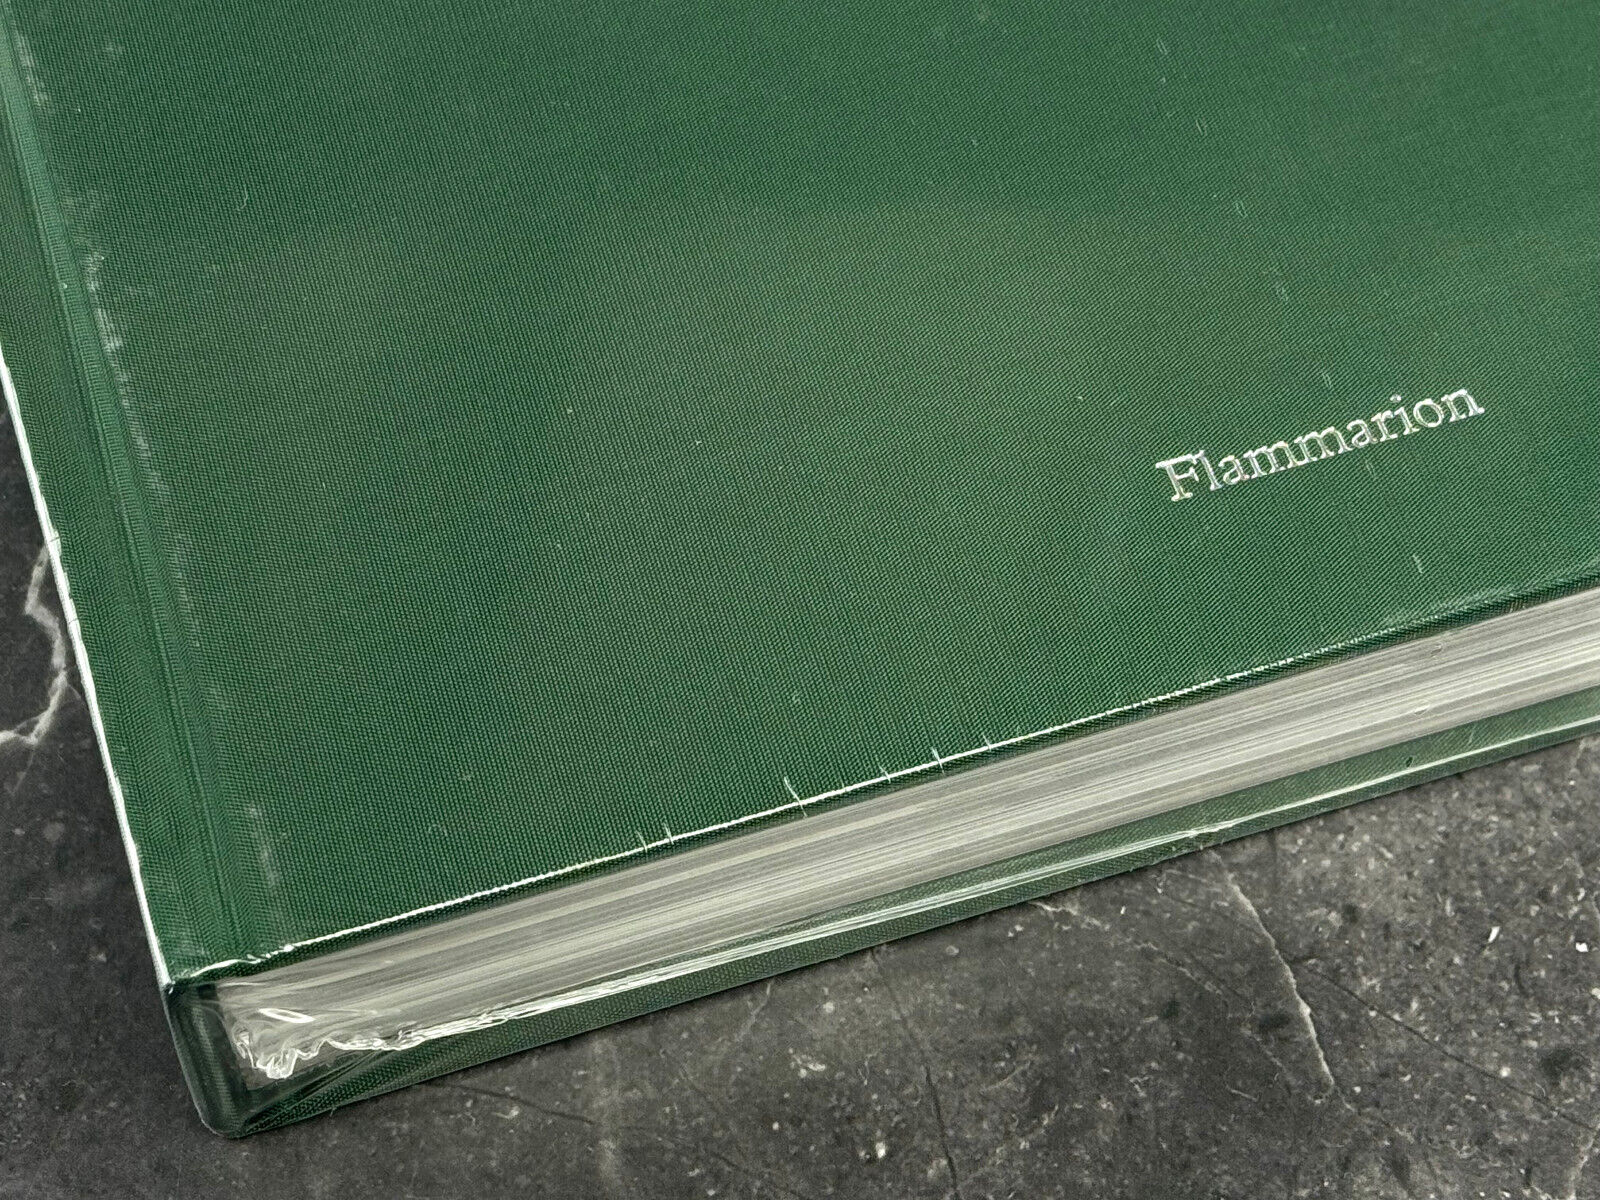 Audemars Piguet Flammarion Katalog